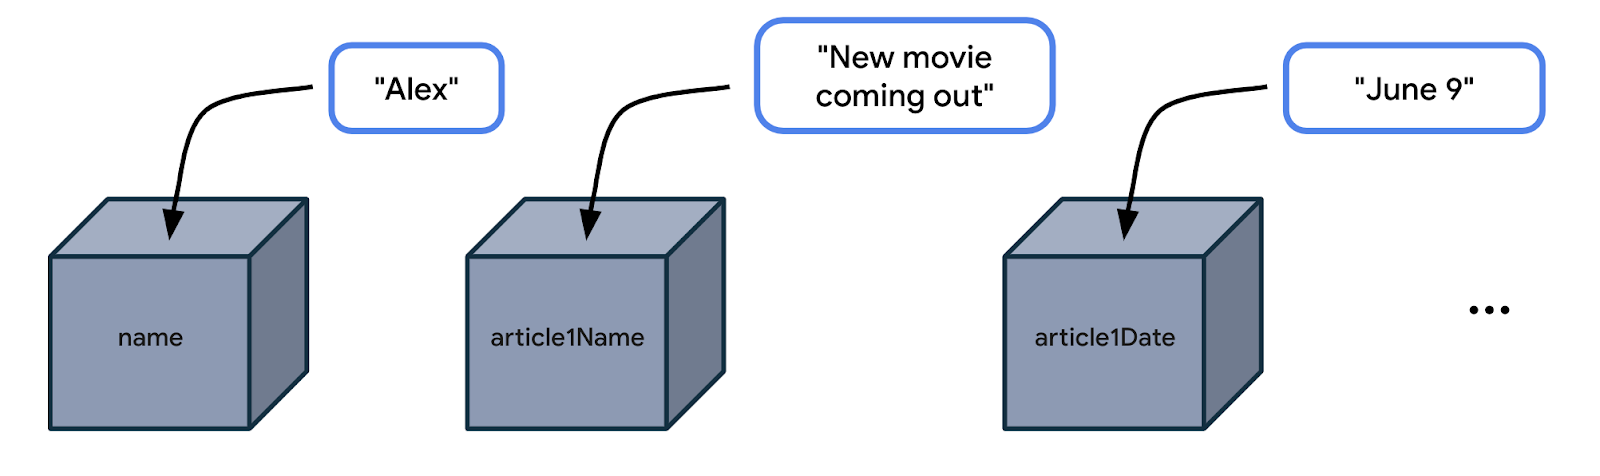 此图示并排显示了 3 个盒子。第一个盒子名为“name”（名称）。盒子旁边有一个内容为“Alex”的标签。有一个箭头从“Alex”指向盒子，表示“Alex”这个值会存储在名为“name”（名称）的盒子里。第二个盒子名为“article1Name”（报道 1 名称）。盒子旁边有一个内容为“New movie coming out”（即将上映的新片）的标签。有一个箭头从这个字符串指向第二个盒子。也就是说，“New movie coming out”（即将上映的新片）这个值会存储在名为“article1Name”（报道 1 名称）的盒子里。第三个盒子名为“article1Date”（报道 1 日期）。盒子旁边有一个内容为“June 9”（6 月 9 日）的标签。有一个箭头从“June 9”（6 月 9 日）指向第三个盒子。也就是说，“June 9”（6 月 9 日）这个值会存储在名为“article1Date”（报道 1 日期）的盒子里。